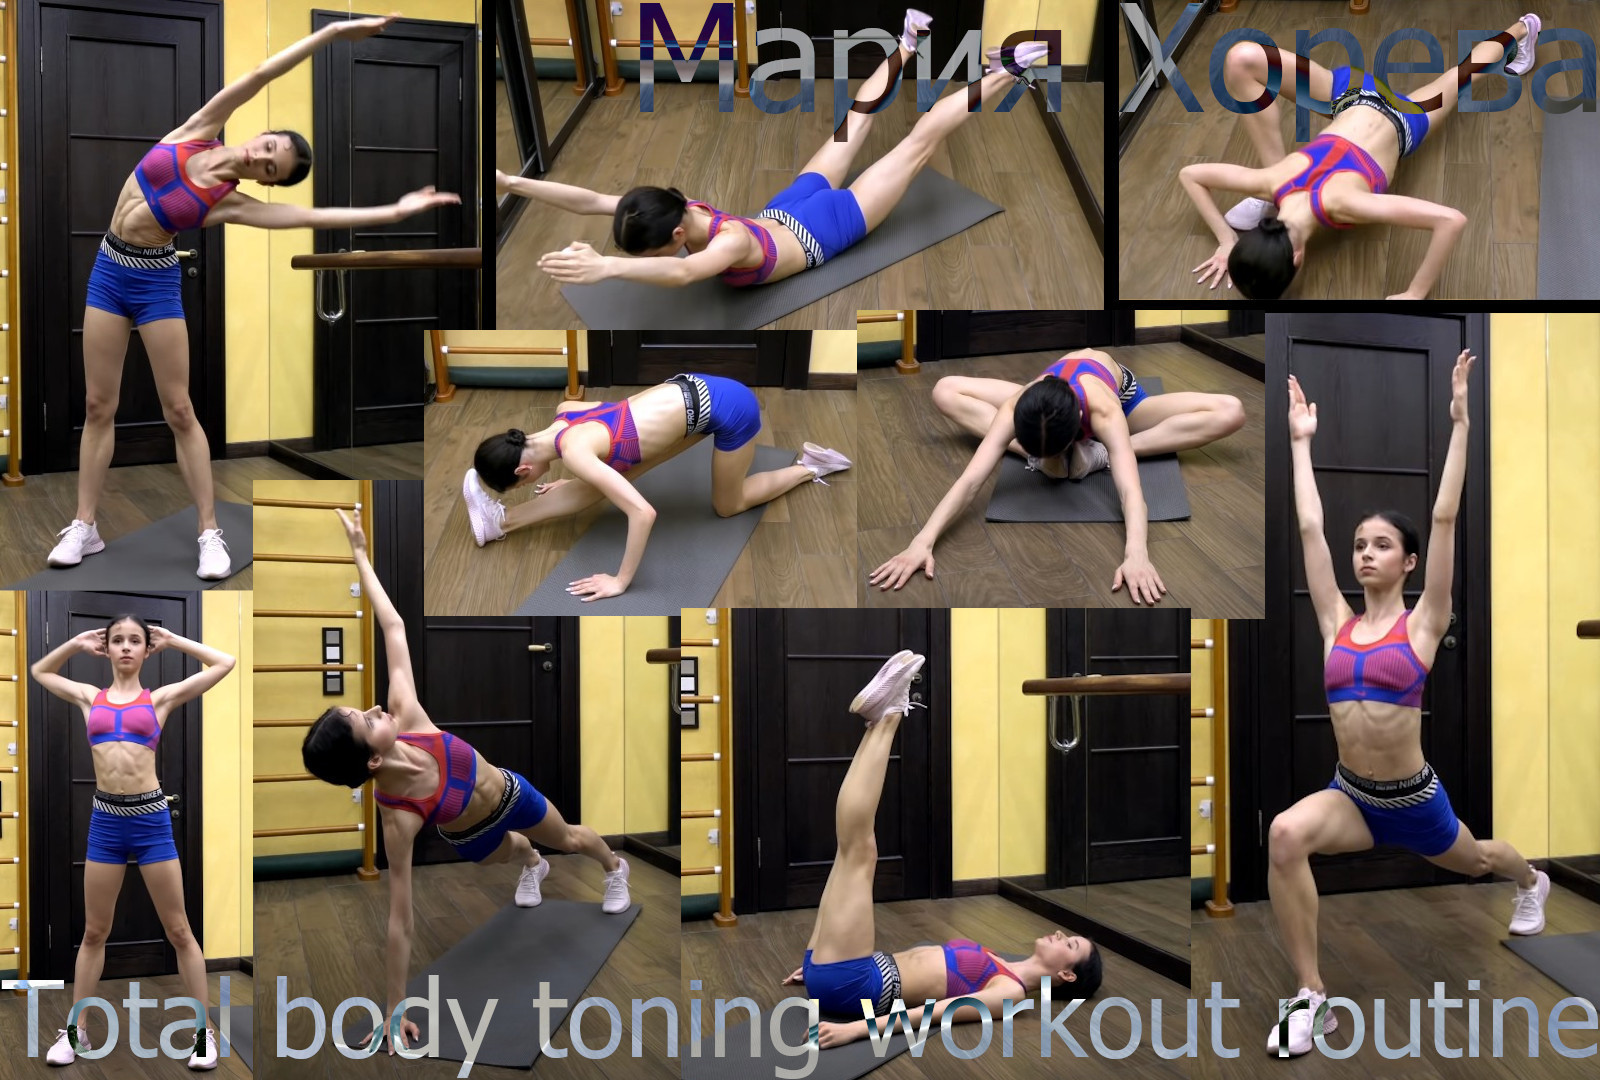 Maria Khoreva - Total body toning workout routine